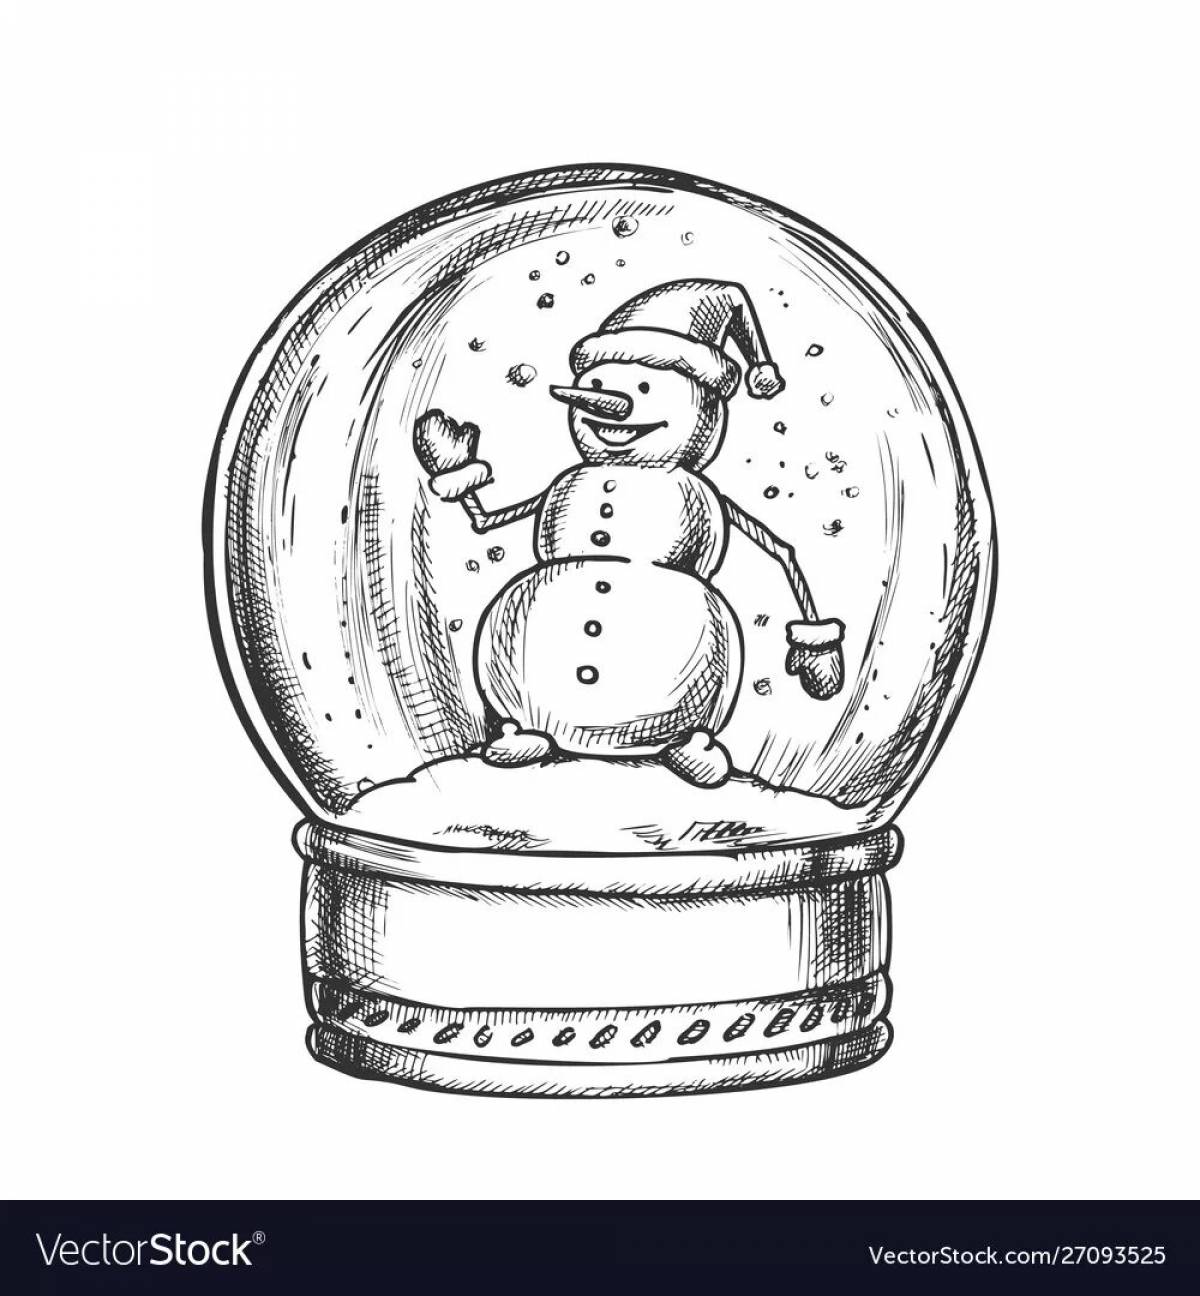 Снеговик в шаре #6